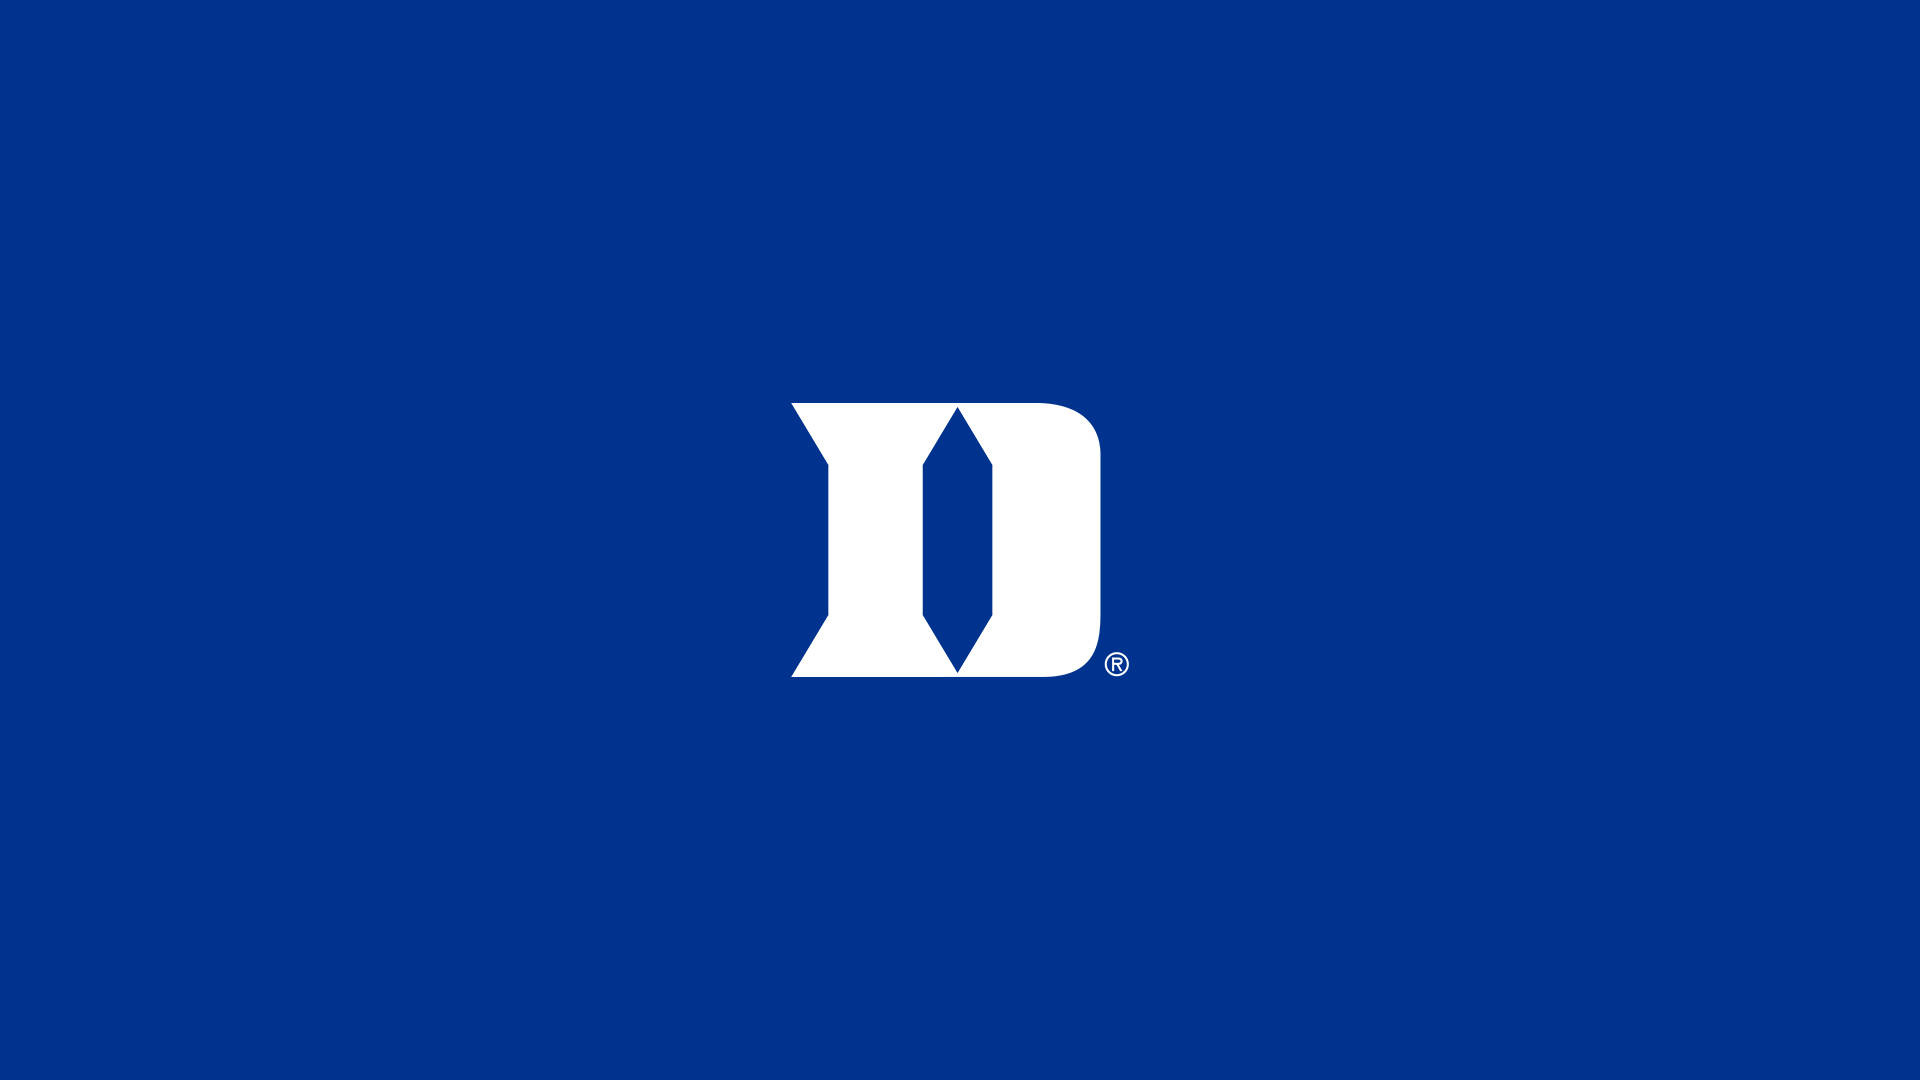 Duke Blue Devils University Initial Logo Wallpaper